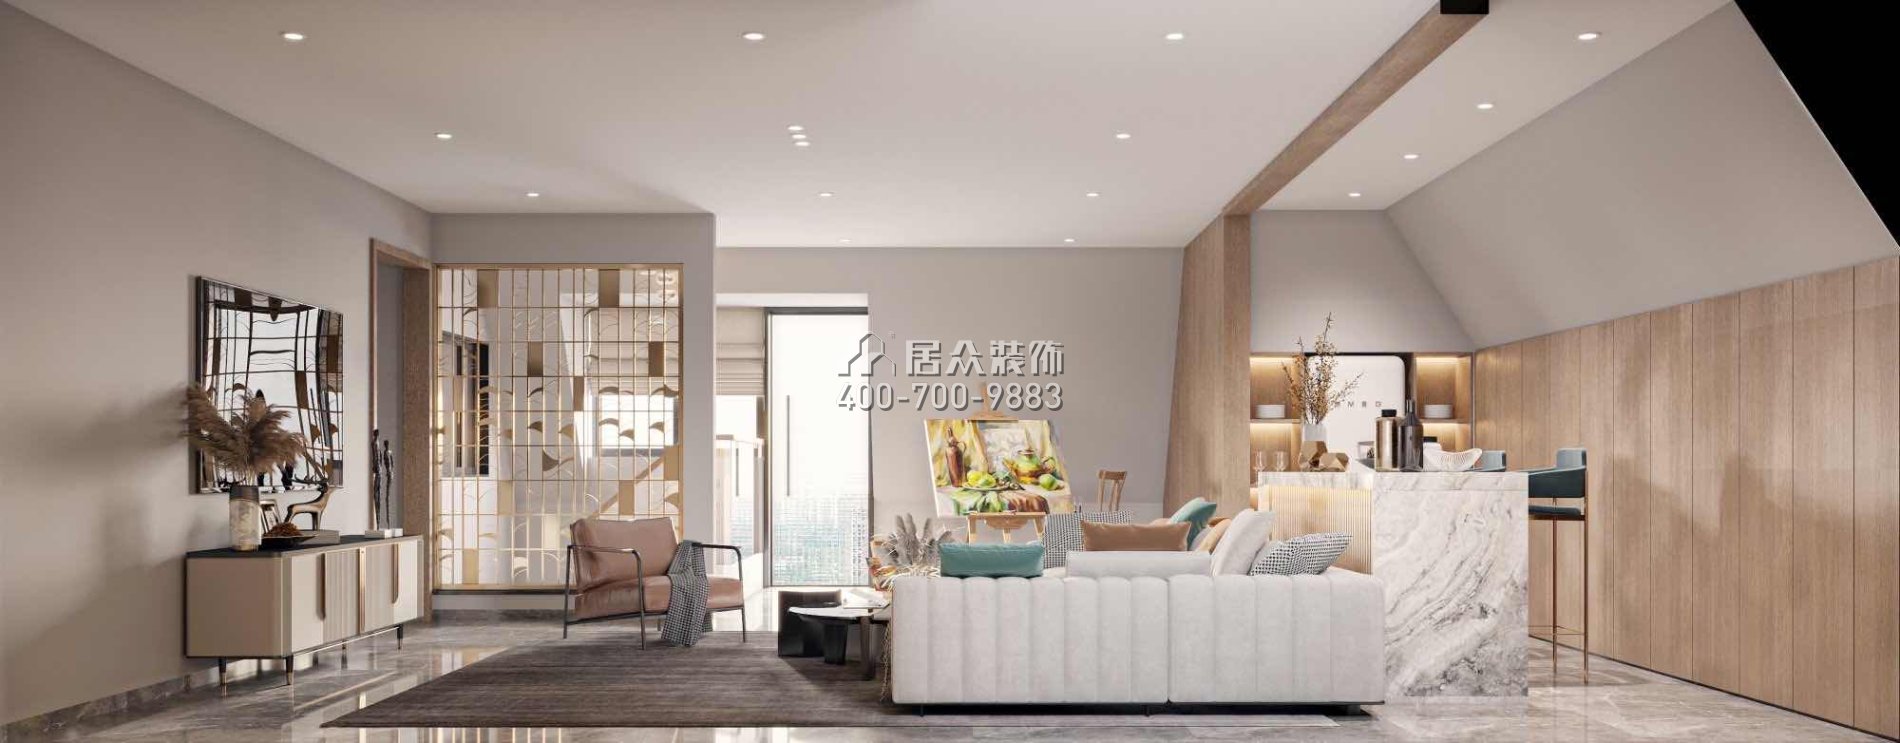 金鴻利嘉閣320平方米中式風格復式戶型客廳裝修效果圖